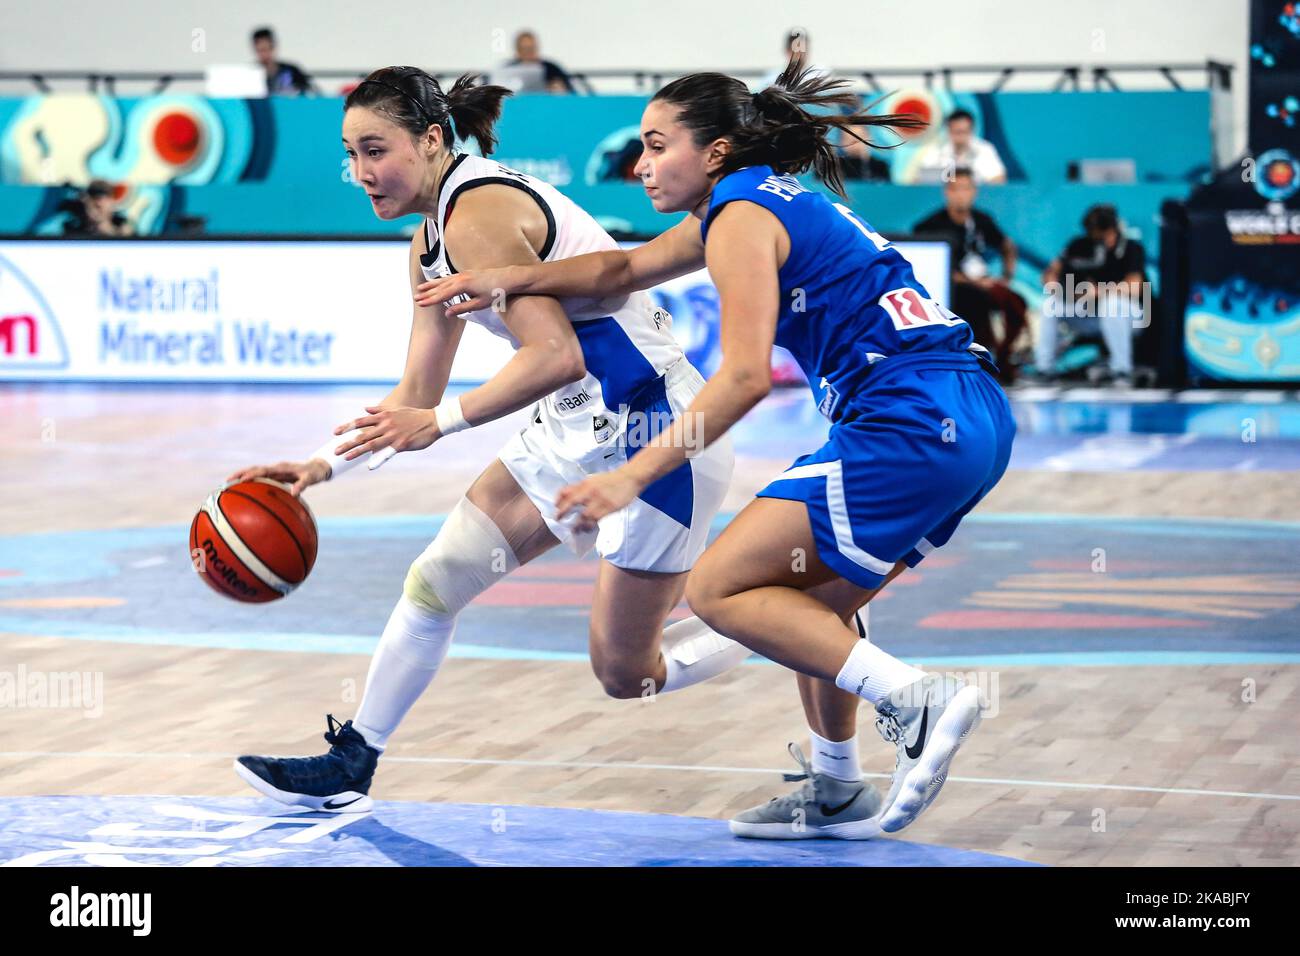 Espagne, Ténérife, 25 septembre 2018: Jung Eun Kim, joueur de basket-ball féminin coréen, en action lors de la coupe du monde de basket-ball féminin de la FIBA Banque D'Images